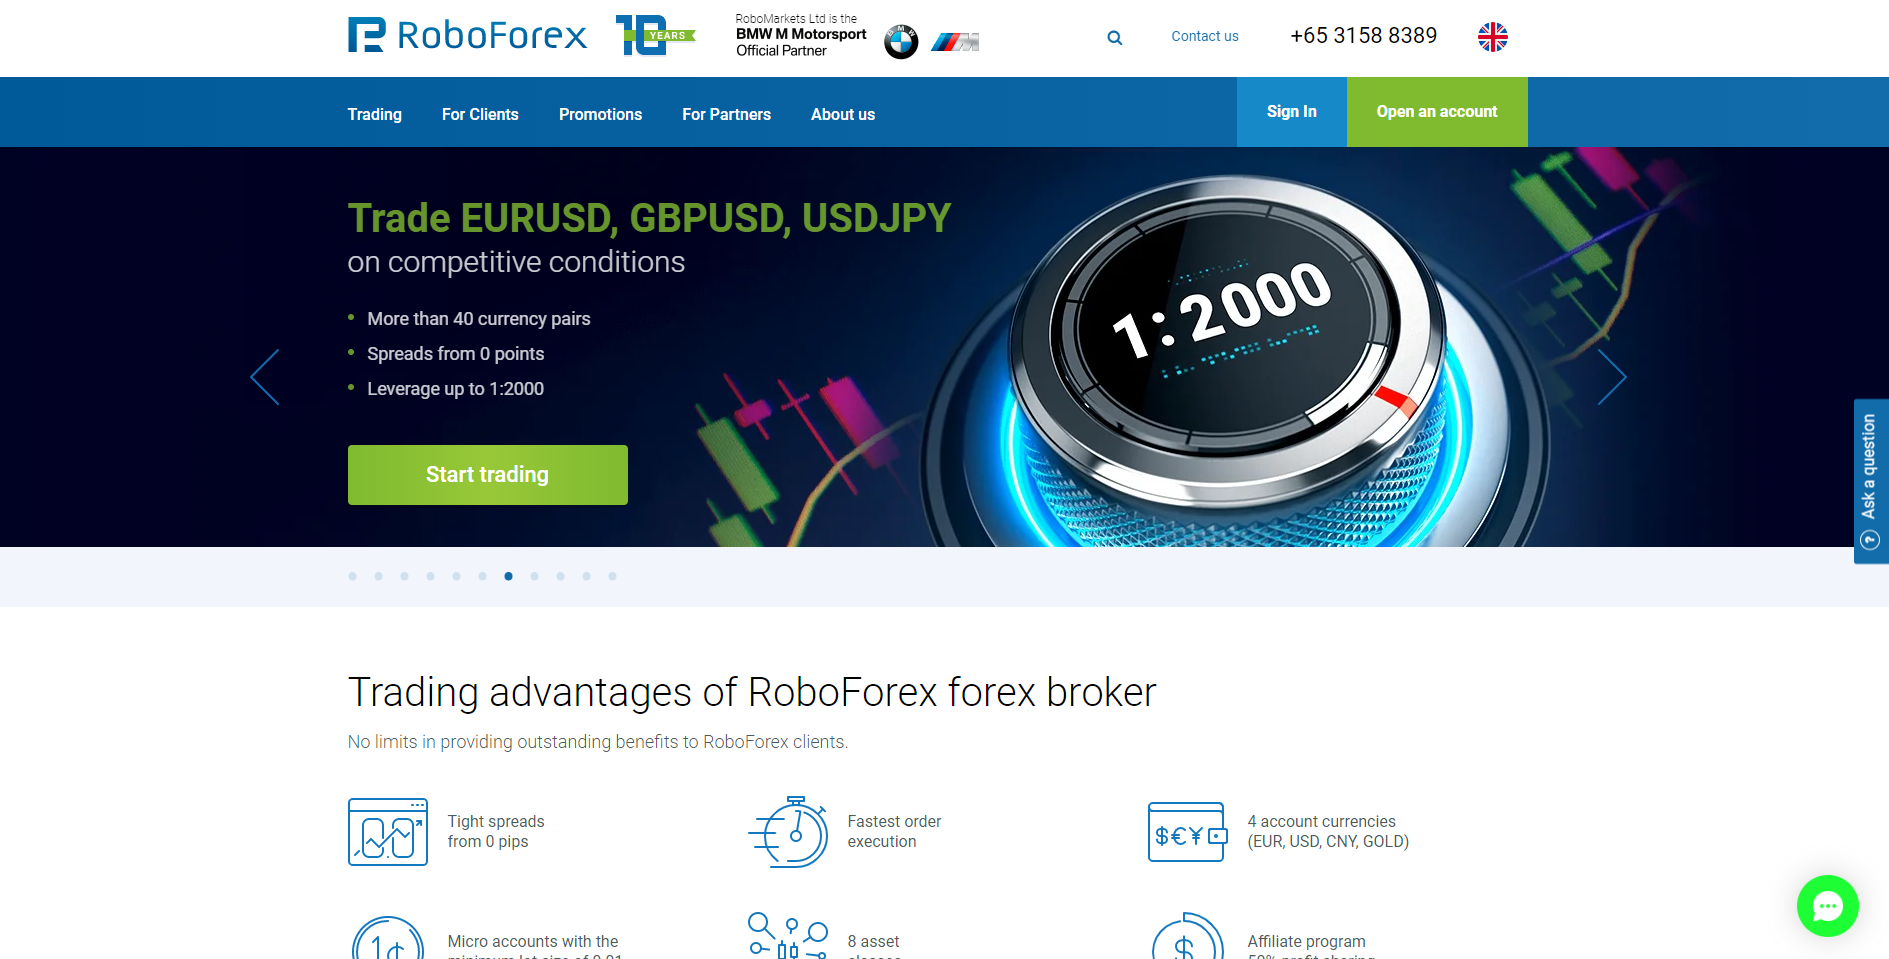 RoboForex webbplats